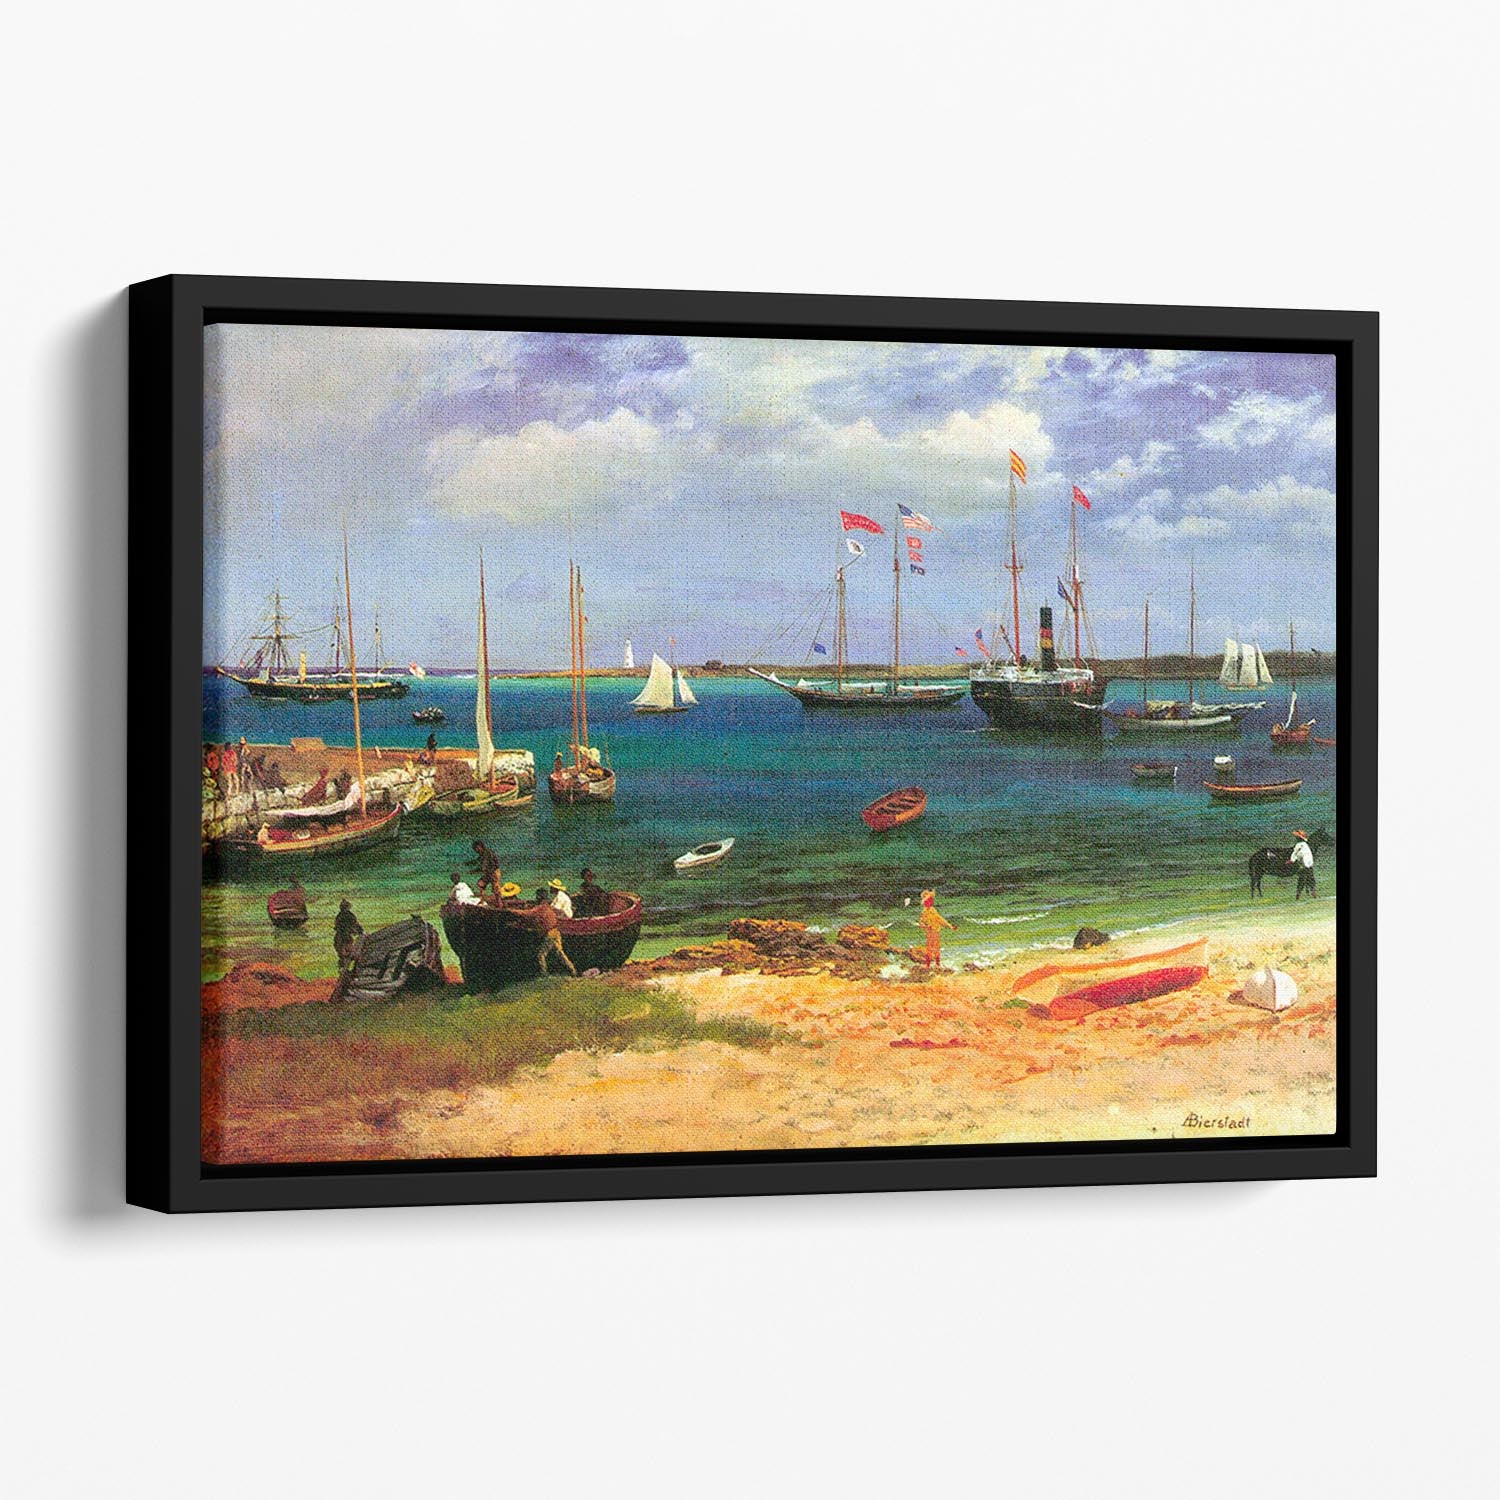 Nassau port by Bierstadt Floating Framed Canvas - Canvas Art Rocks - 1